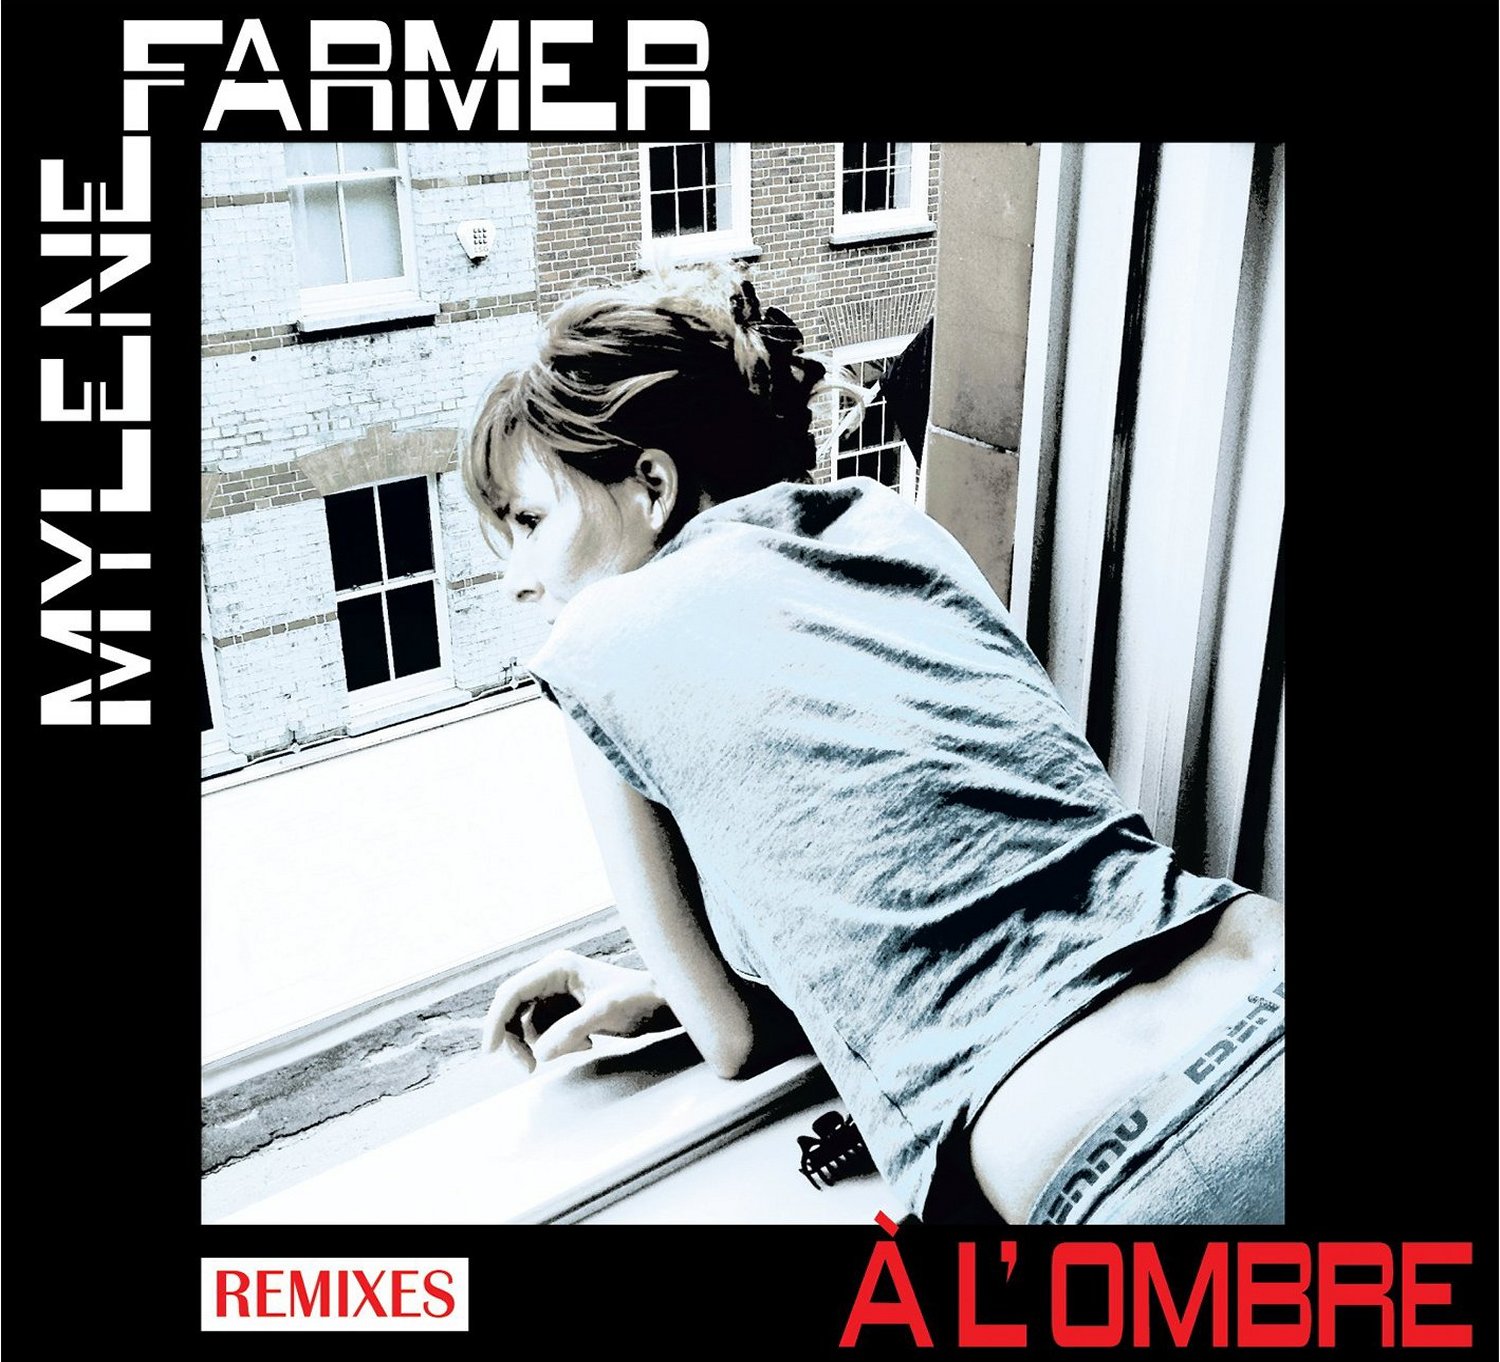 mylene Farmer